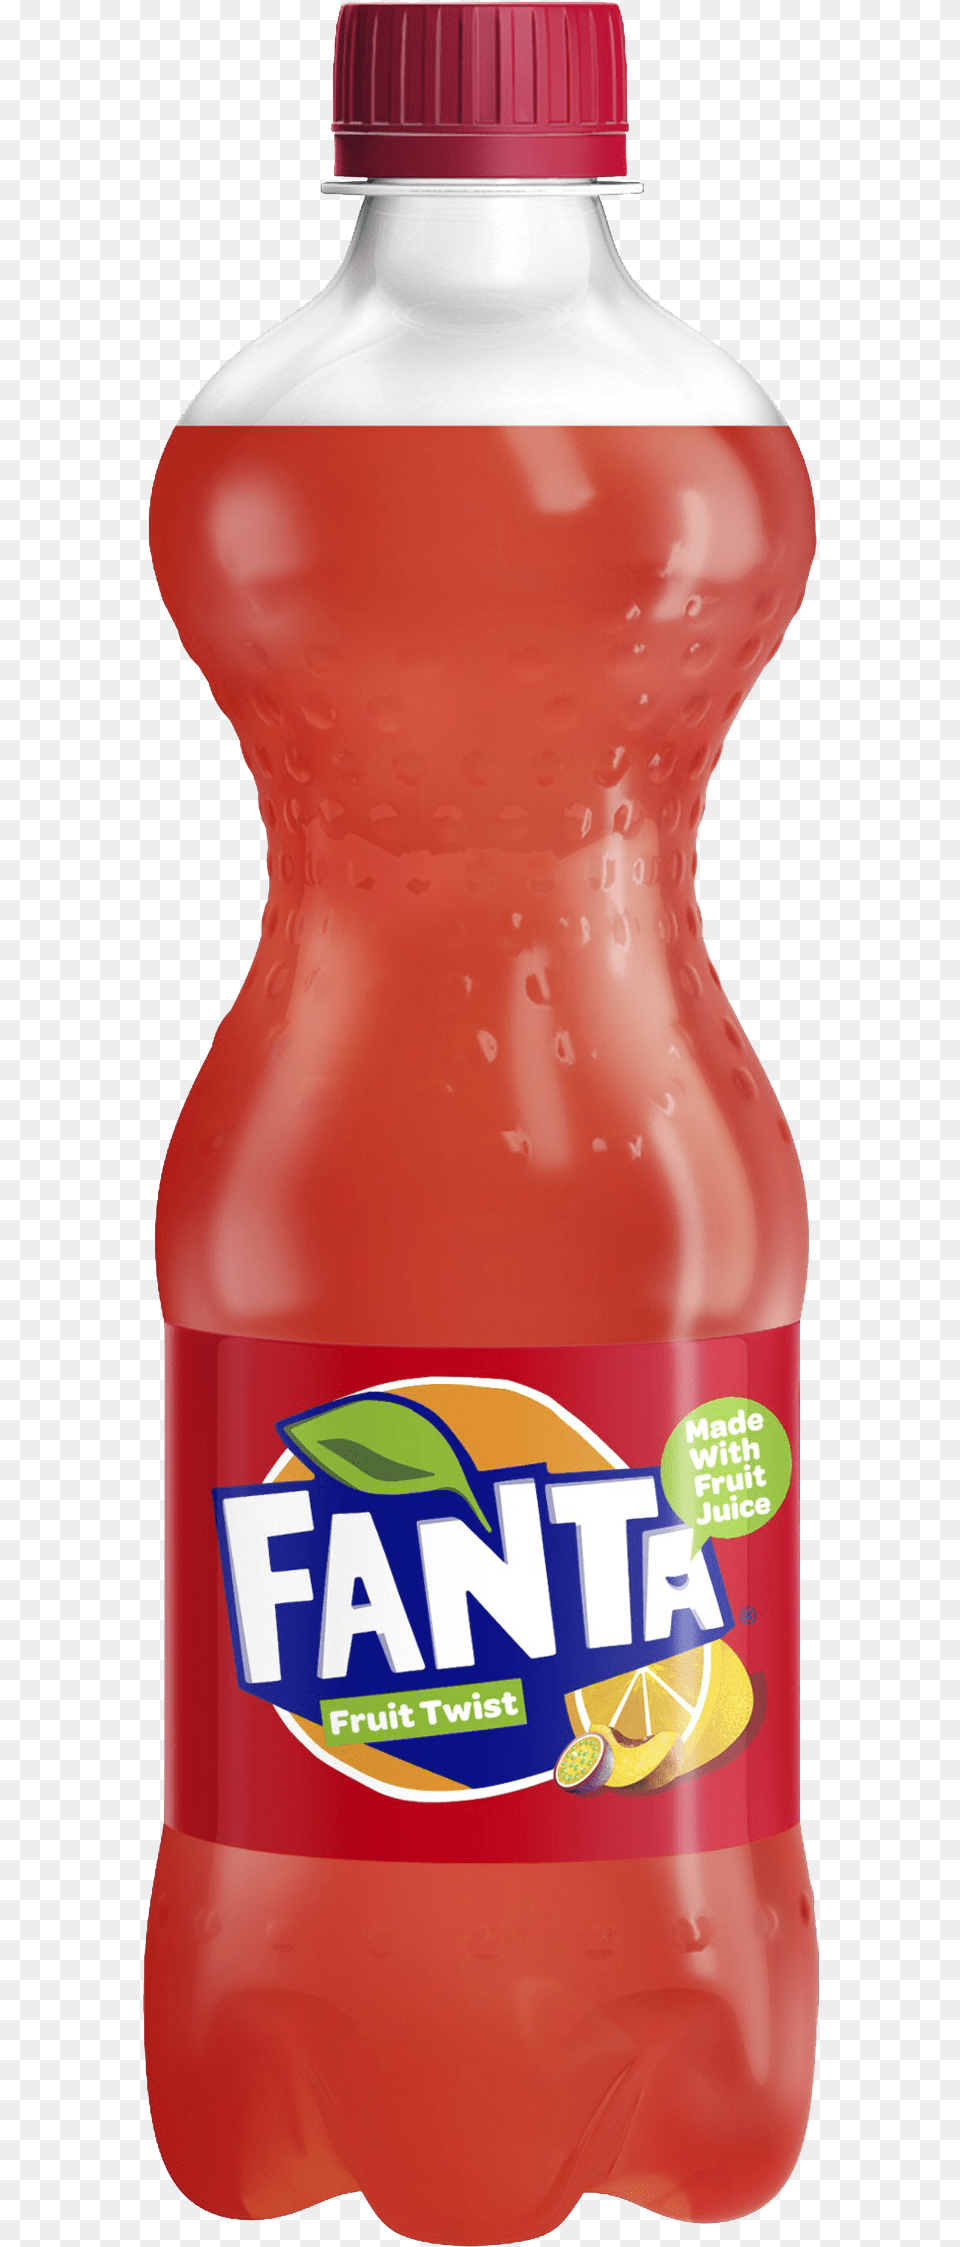 Fanta Clipart Fanta Fruit Twist, Food, Ketchup, Beverage, Bottle Free Transparent Png